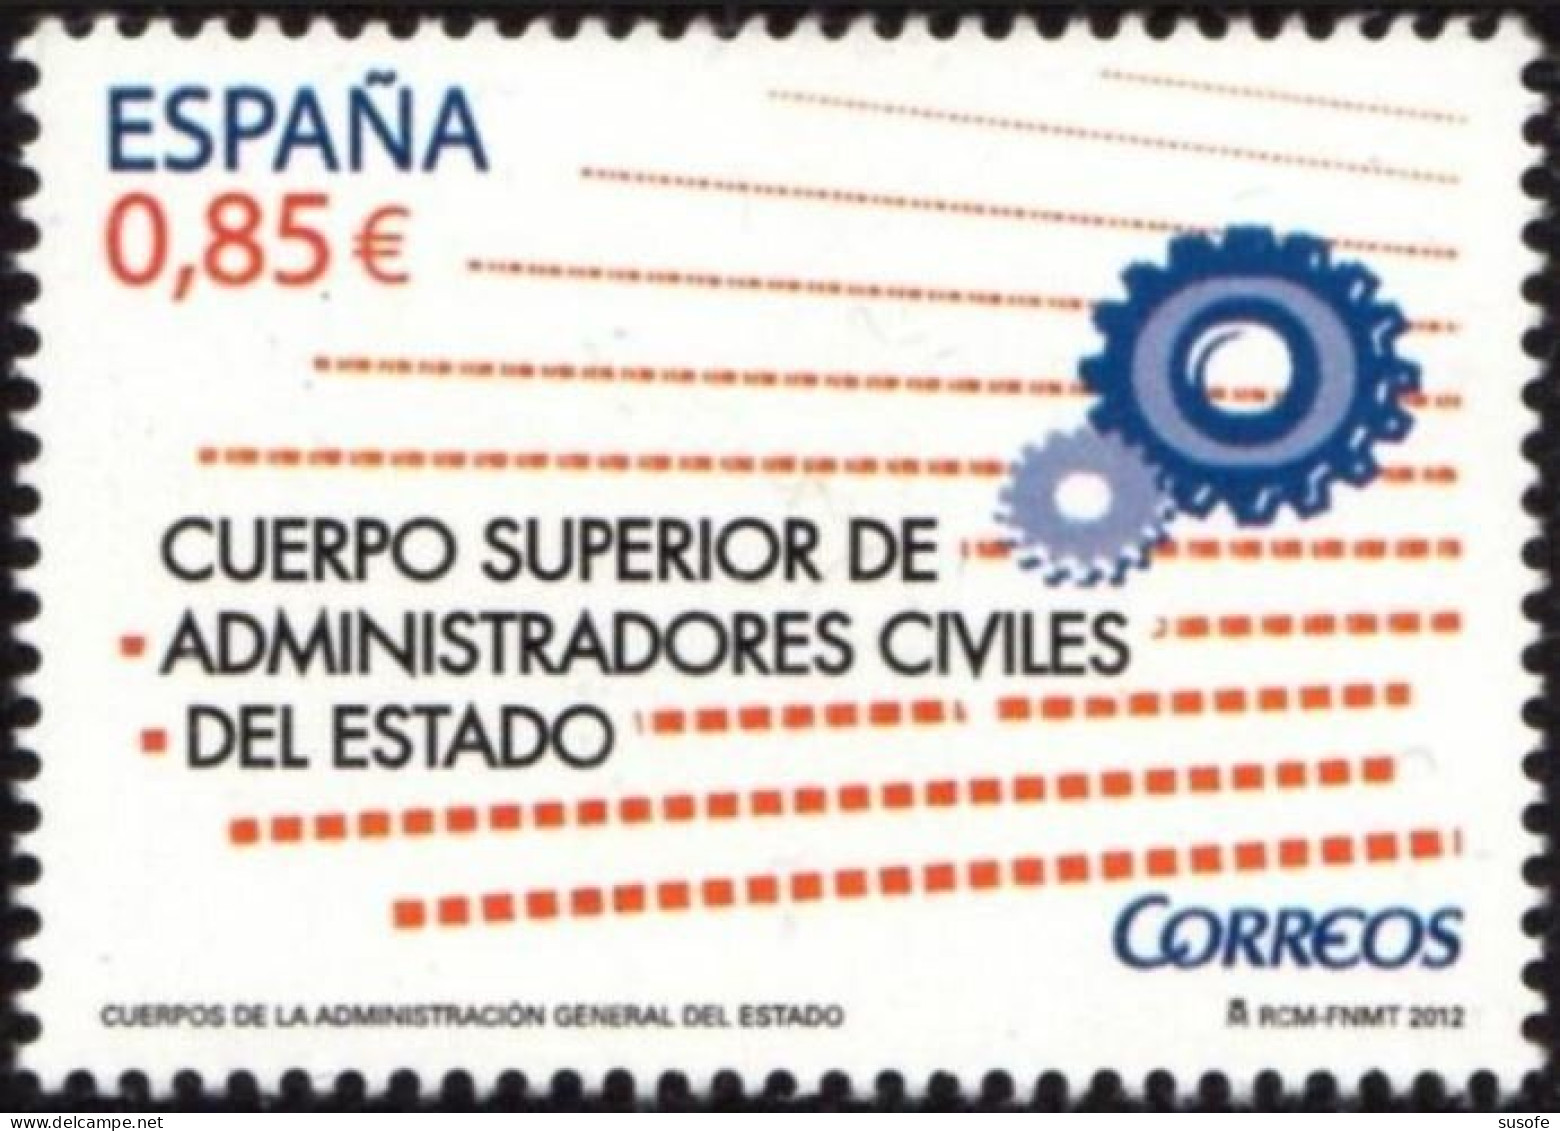 España 2012 Edifil 4759 Sello ** Cuerpo Superior De Administradores Civiles Del Estado Michel 4741 Yvert 4446 Spain - Unused Stamps